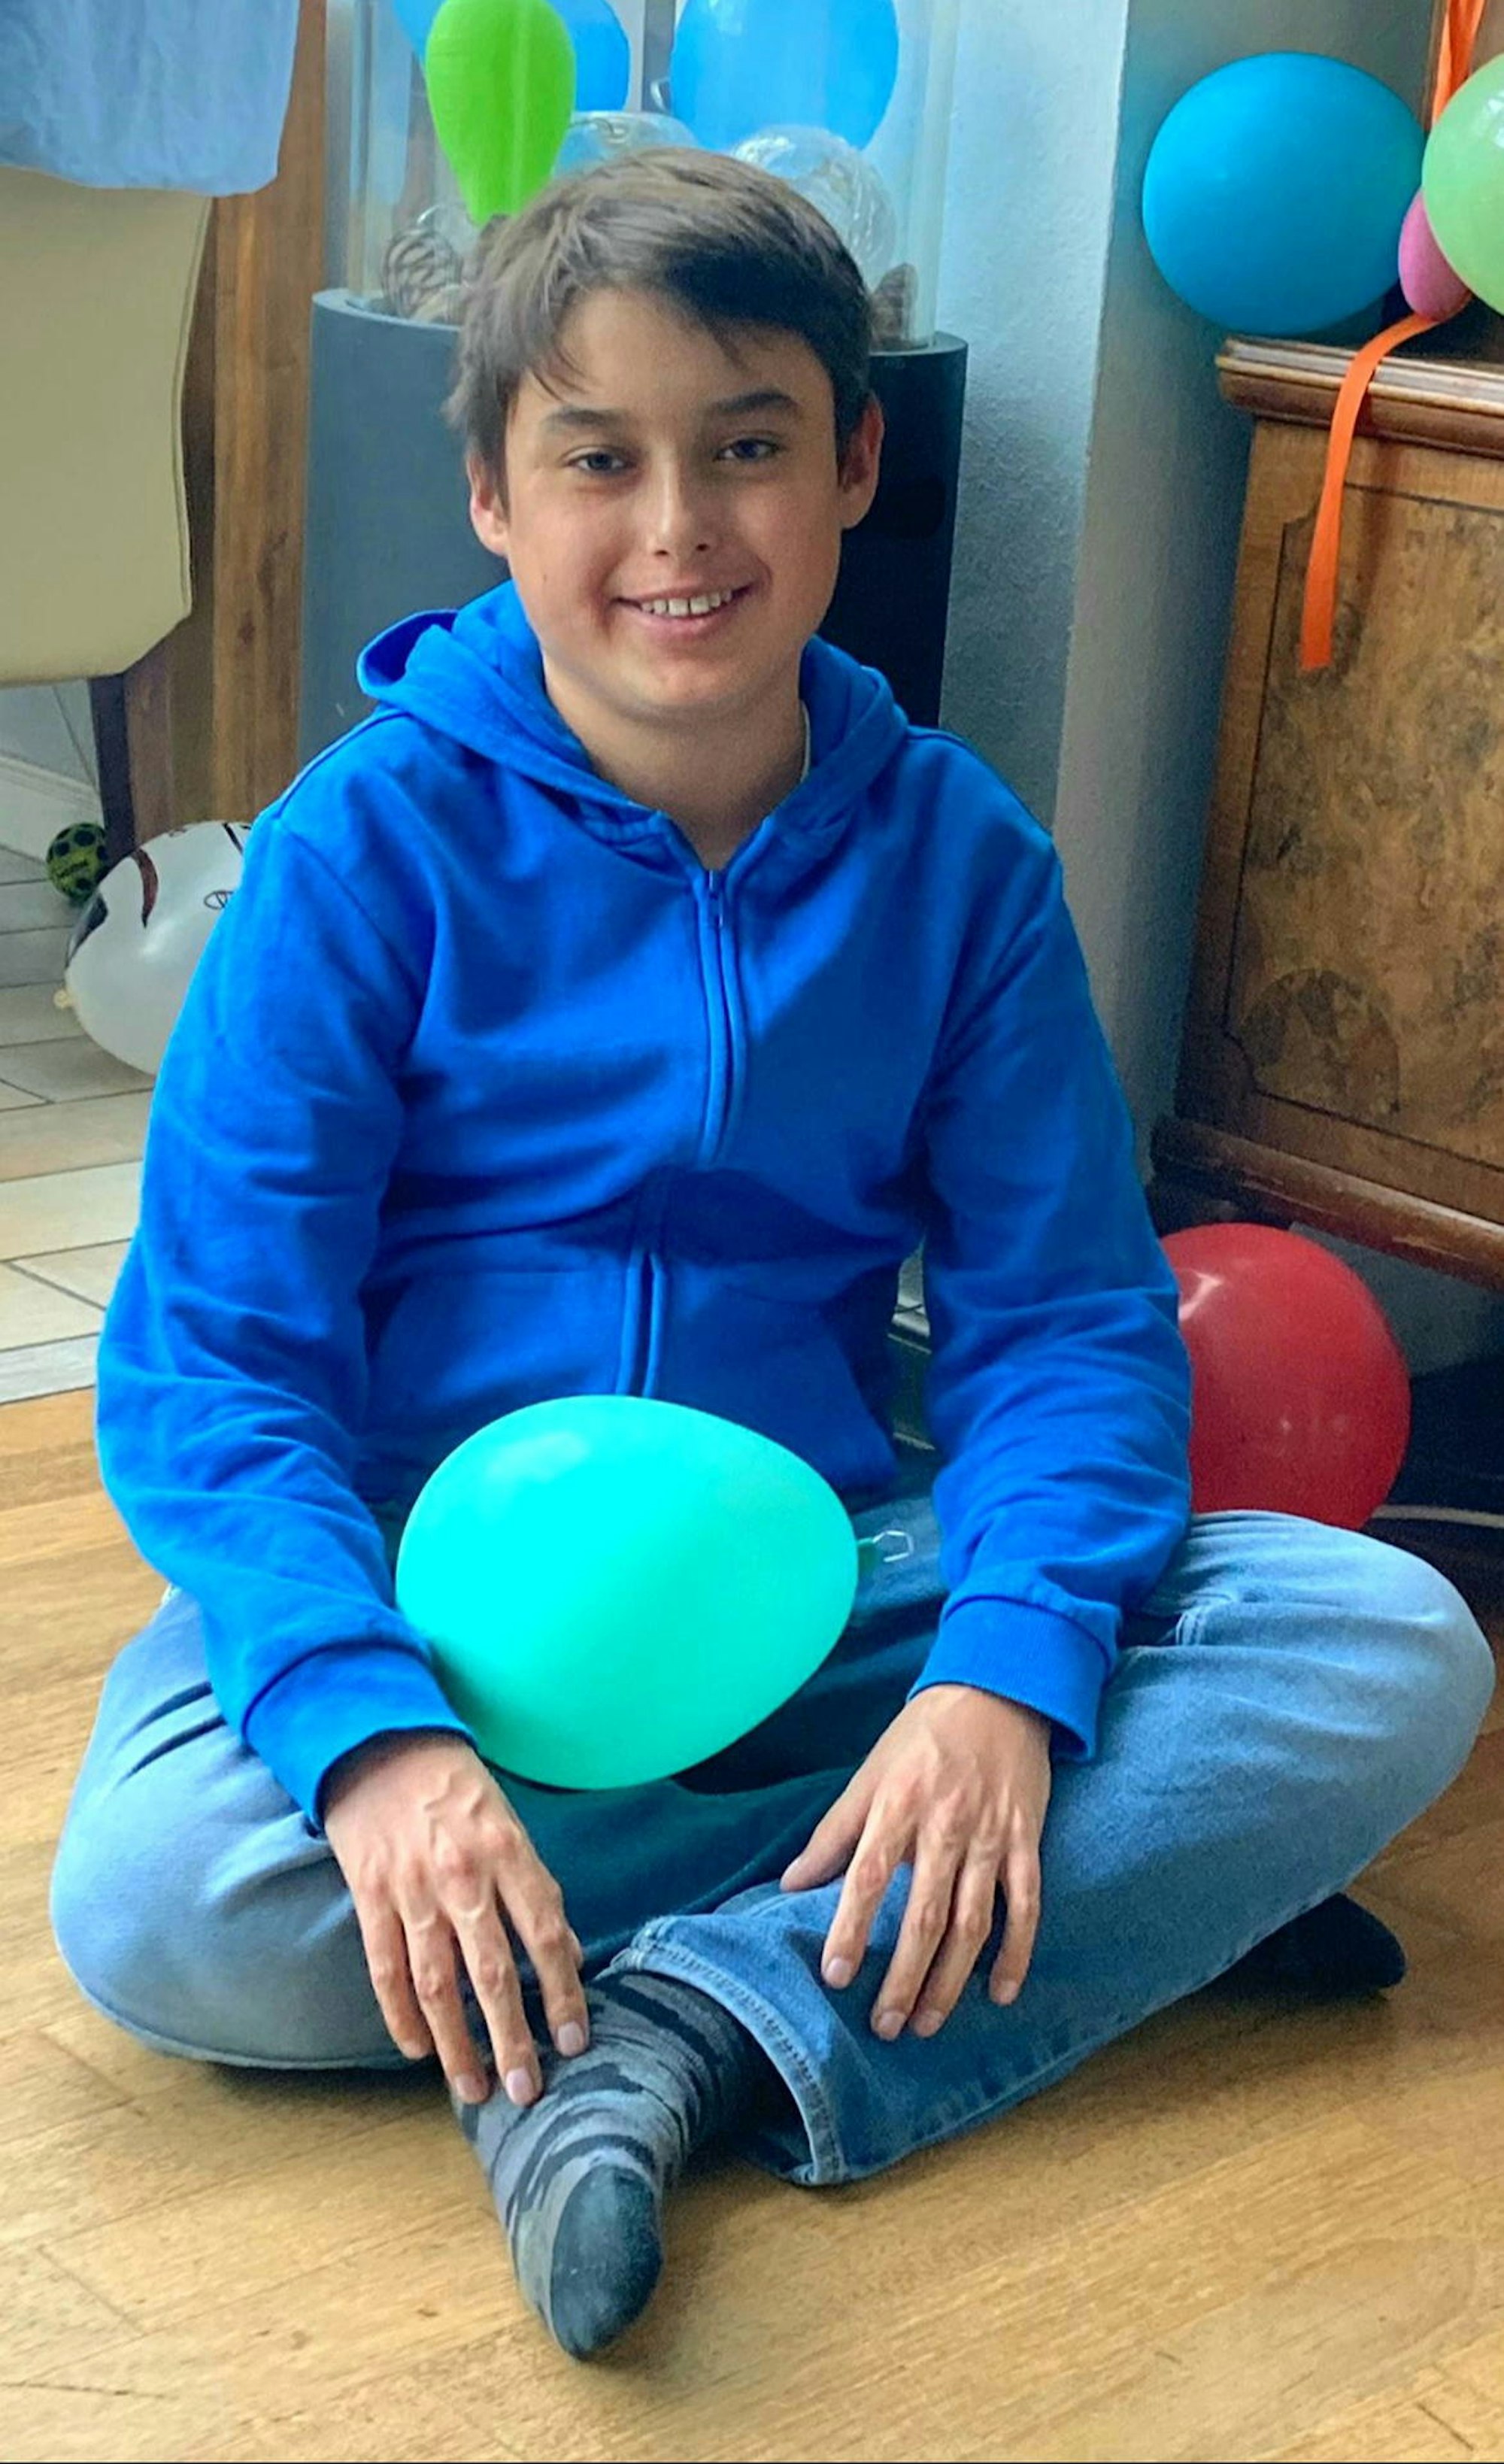 Herzpatient Joshua (14) geht es nach seinen beiden Operationen in den USA schon deutlicher besser.